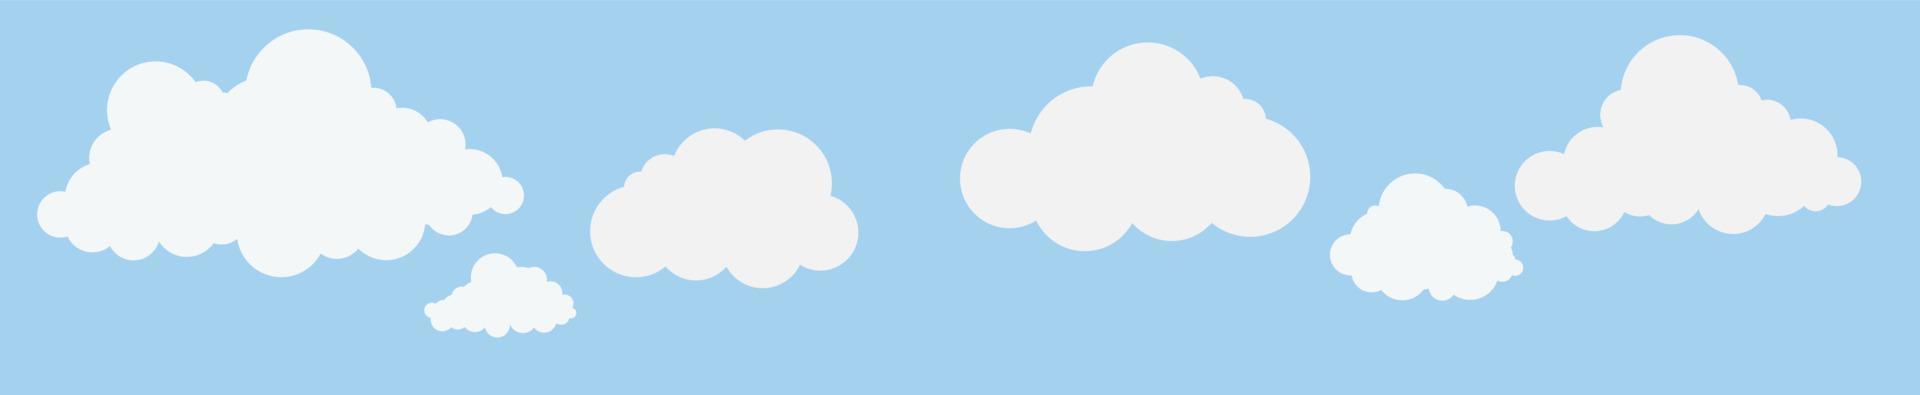 nuages et ciel, fond nature météo, bannière horizontale, illustration vectorielle. vecteur